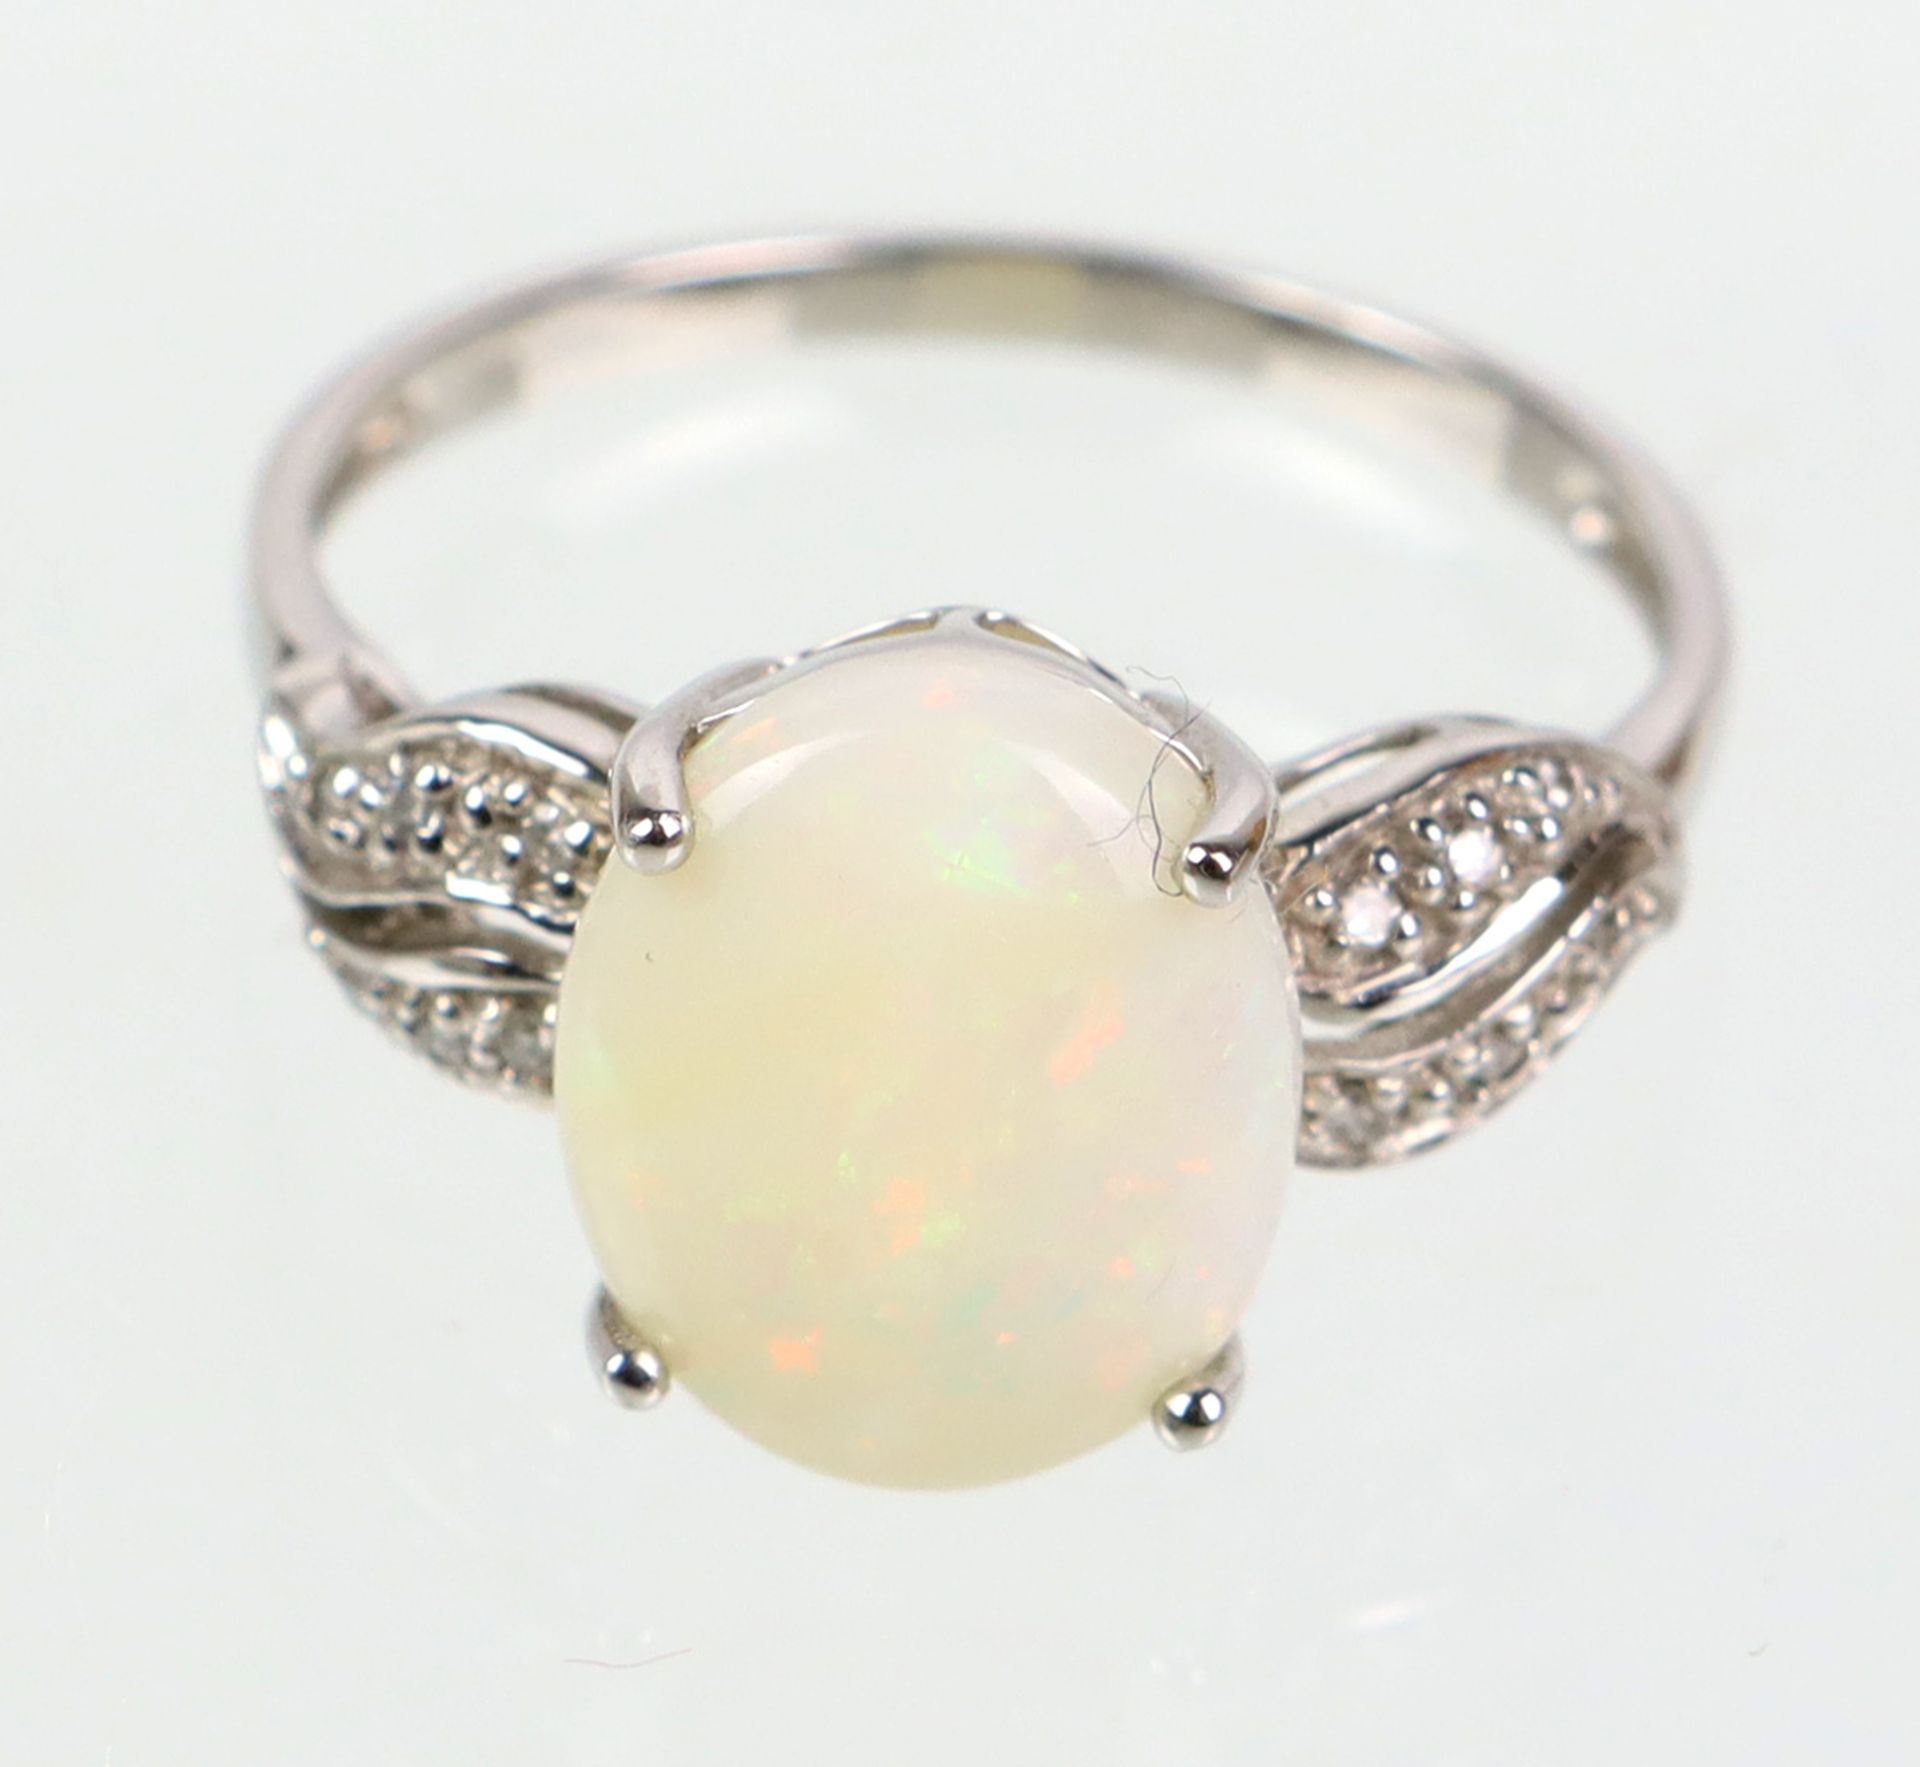 Opal Ring mit Billanten - WG 375in Weißgold 375 (9 Karat) gearbeitet u. punziert, Ringkopf mit